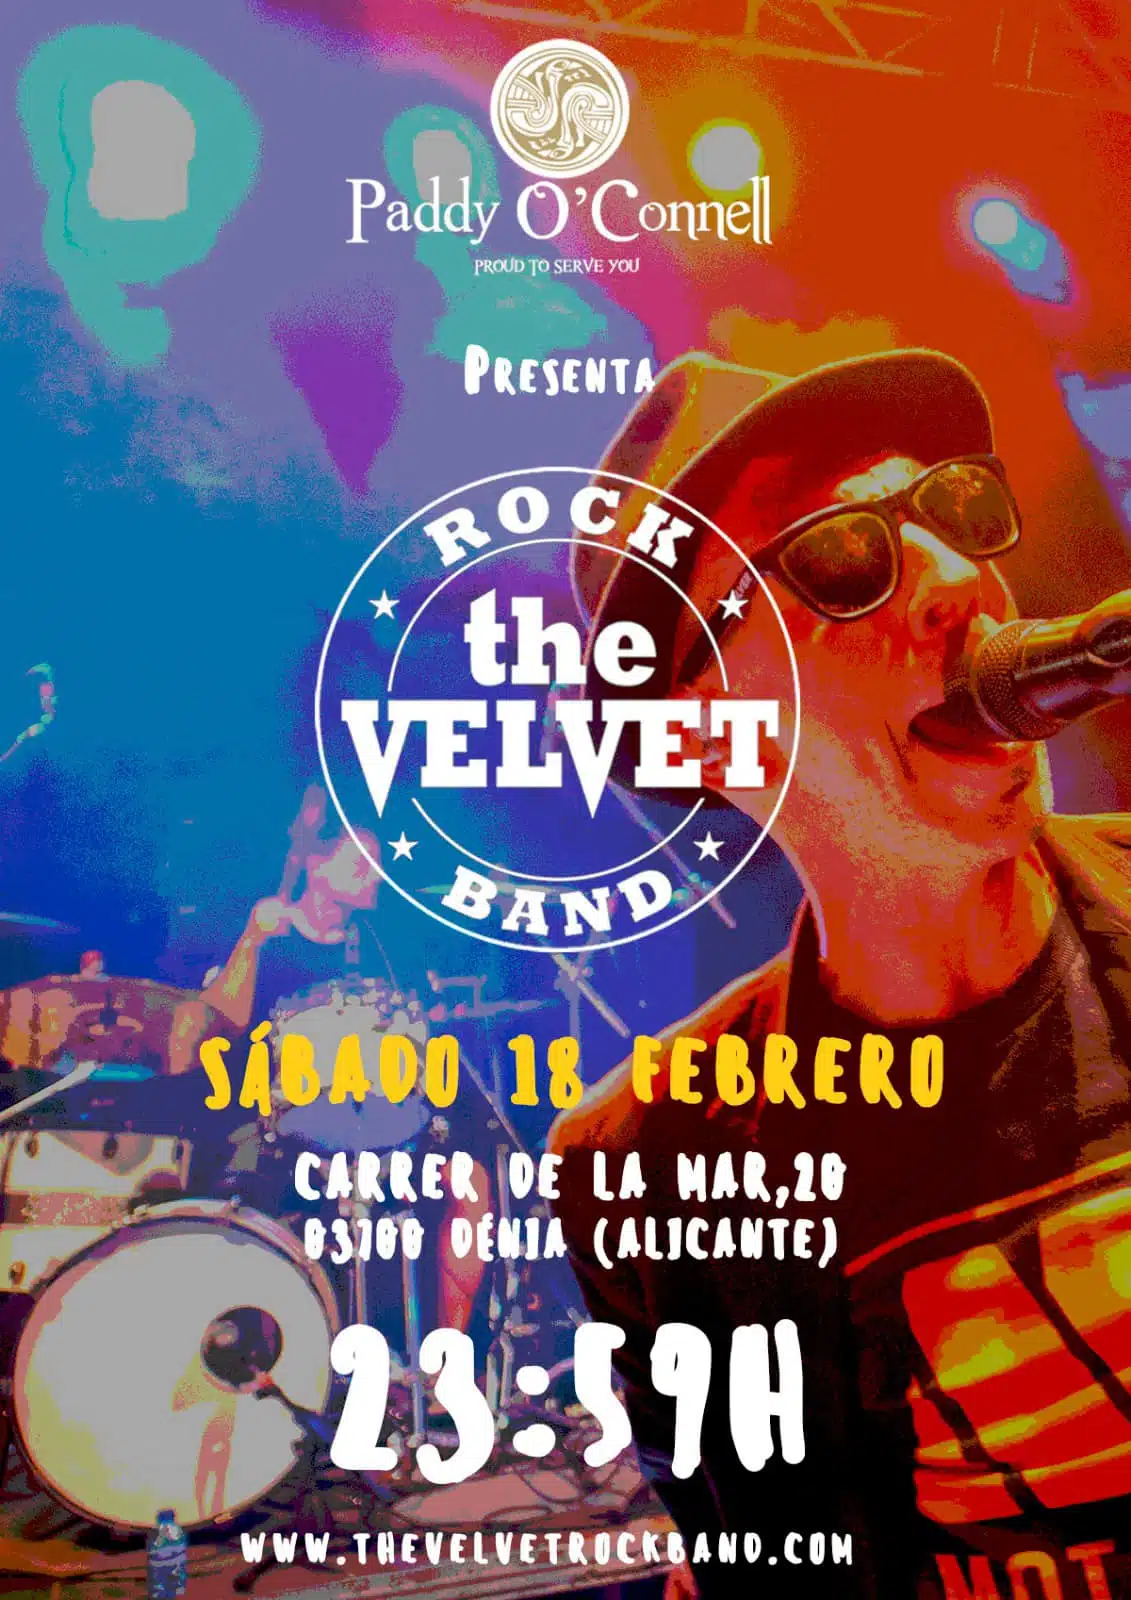 The Velvet rock band